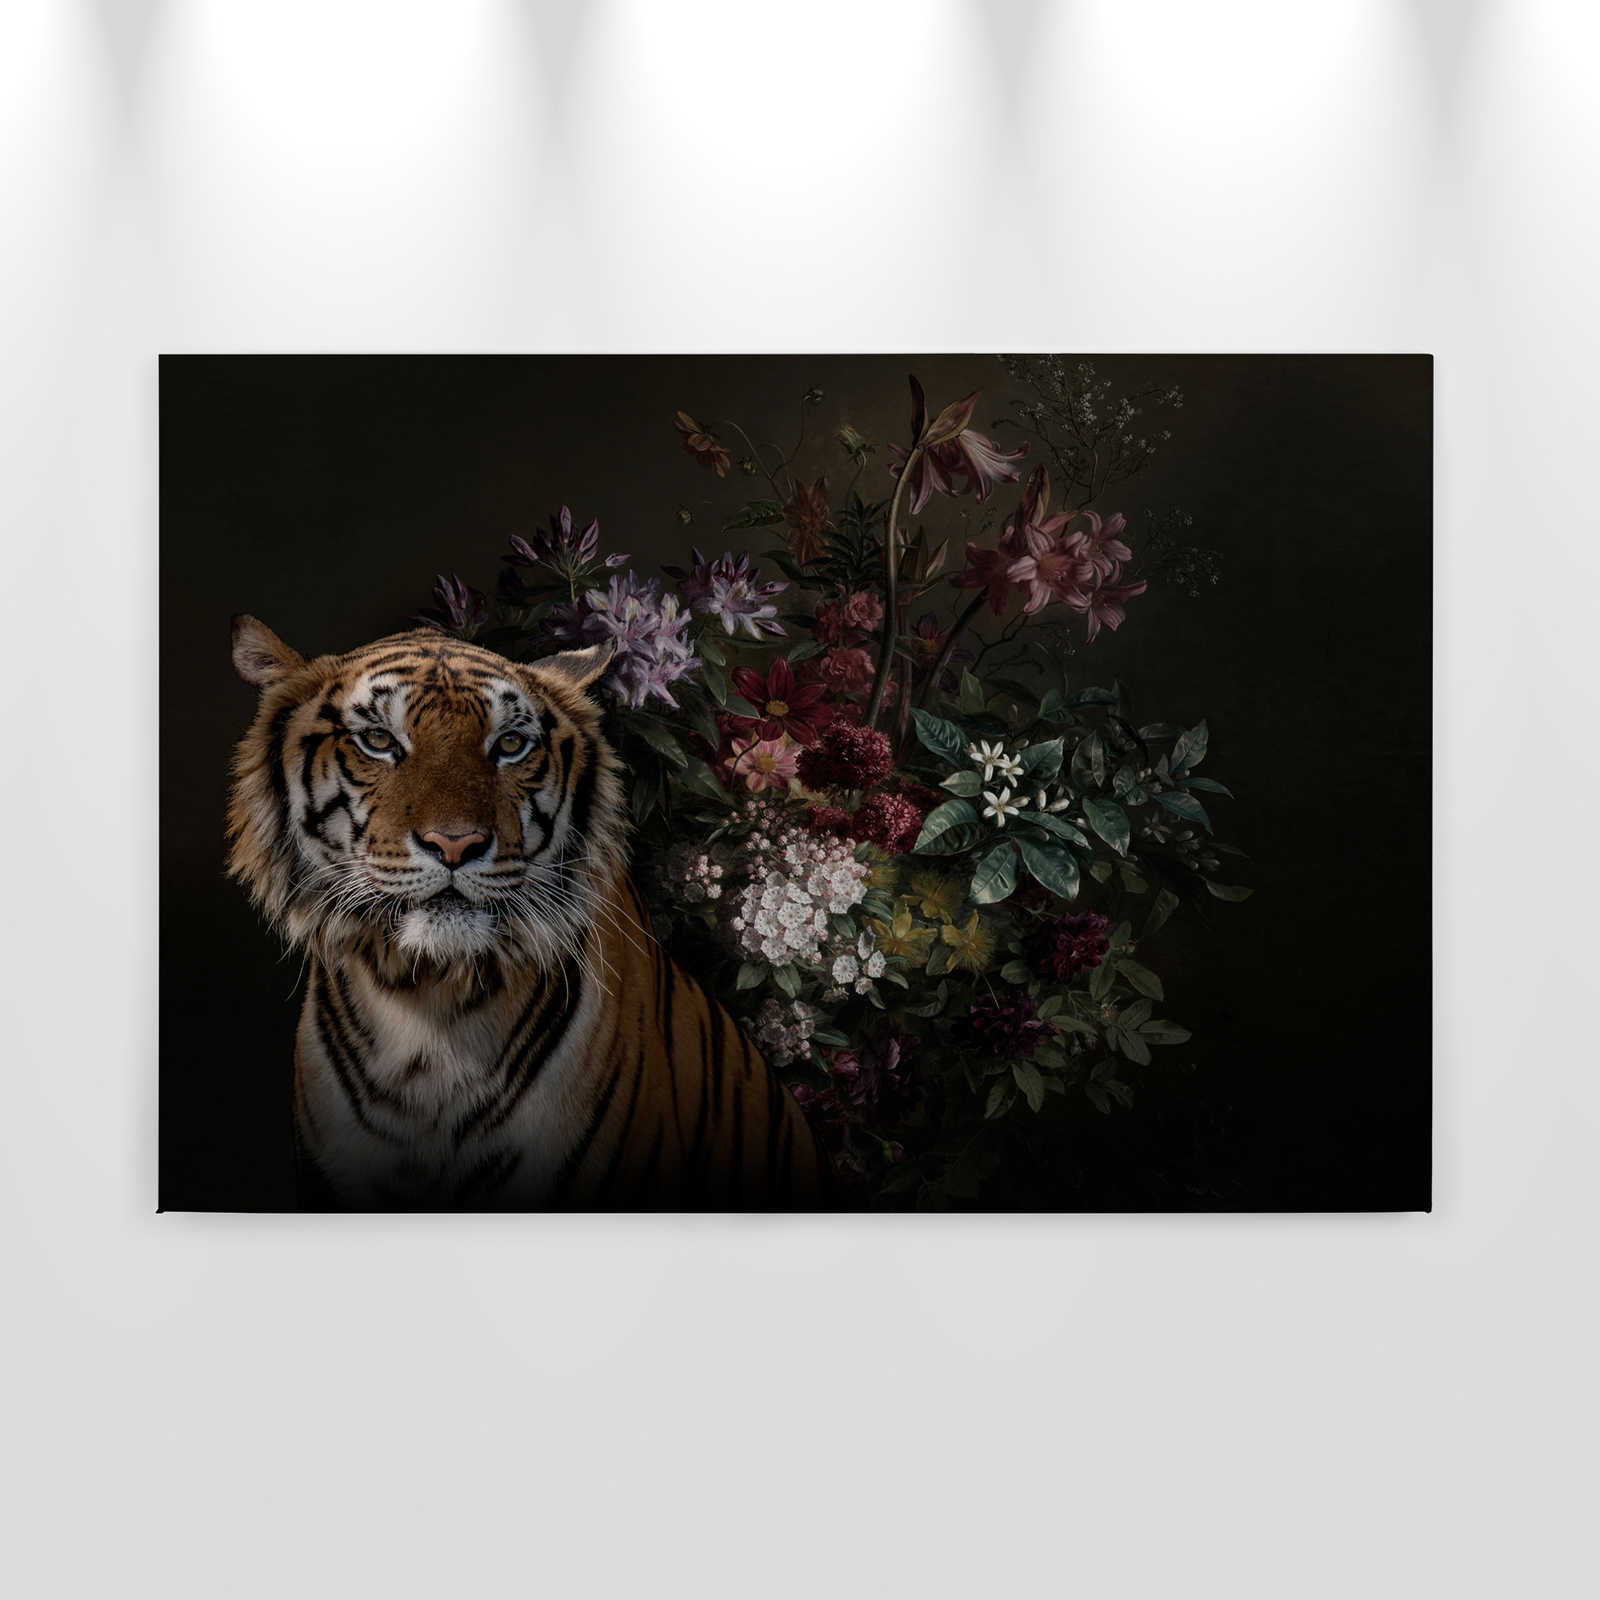             Cuadro en lienzo Retrato de tigre con flores - 0,90 m x 0,60 m
        